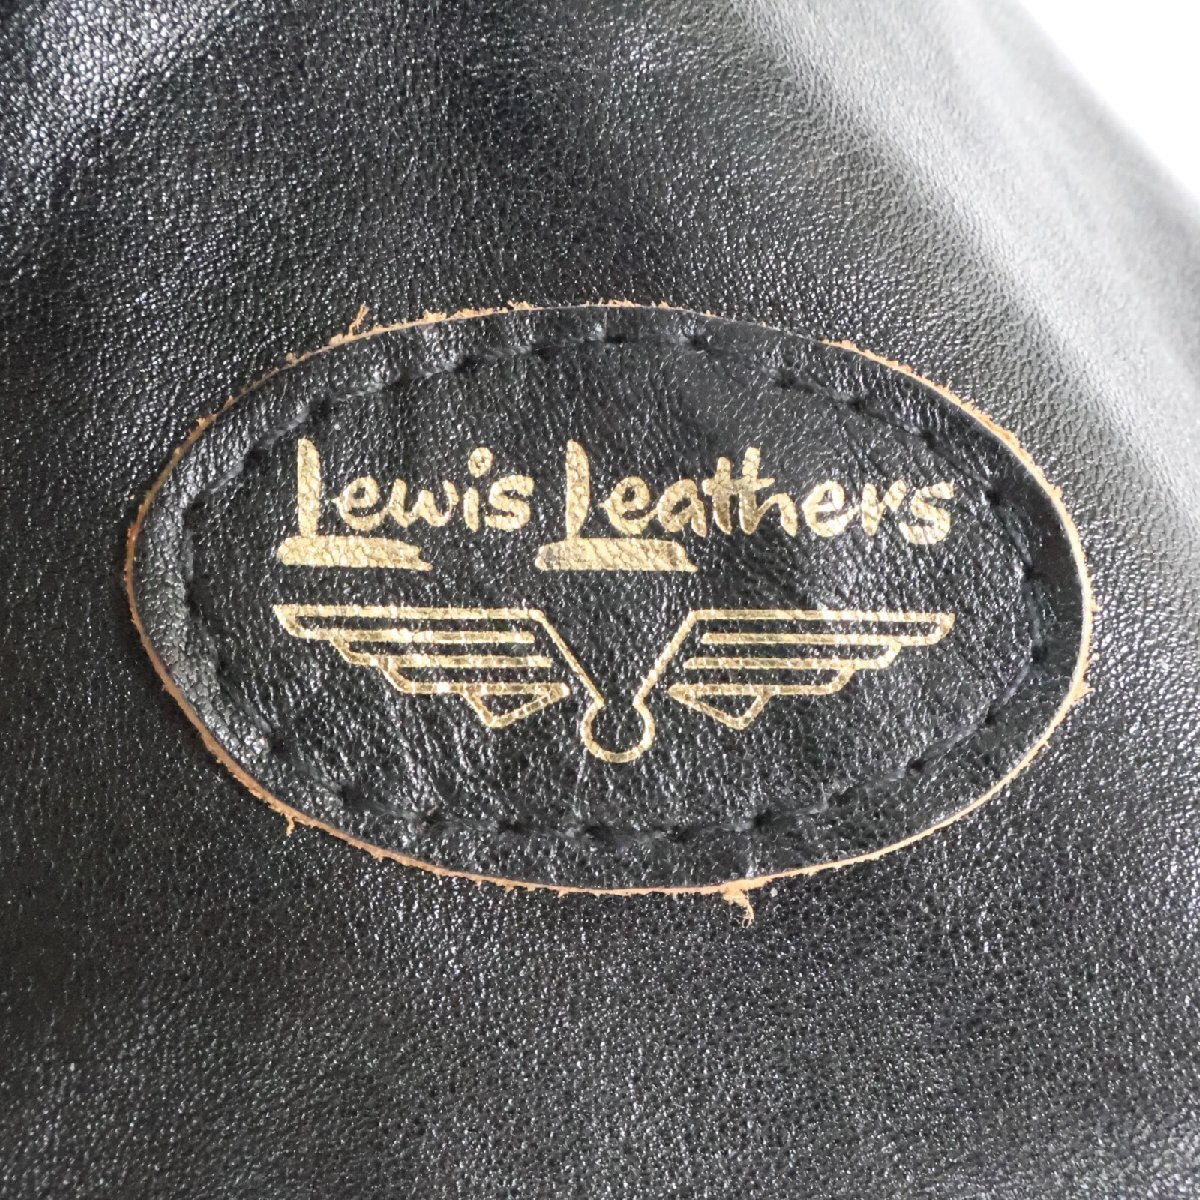 美品/23年製 Lewis Leathers ルイスレザー 441T サイクロン タイトフィット フルベジタブルタンニン鞣しカウハイド ダブルライダース36_画像8